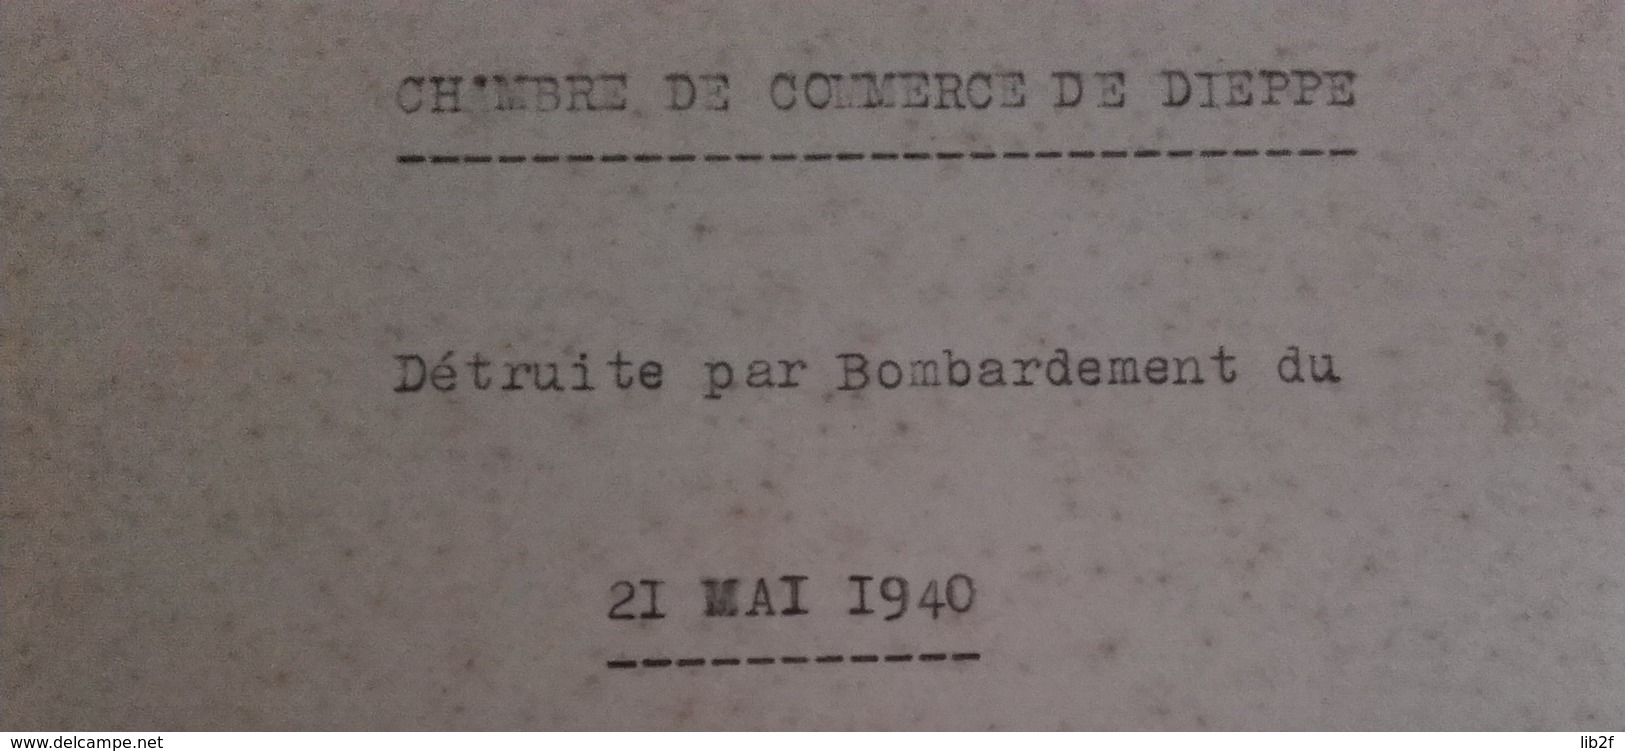 1940 DIEPPE Bombardement Du 21 Mai Destruction De La Chambre De Commerce 39-40 1939-1945 WW2 2WK - War, Military